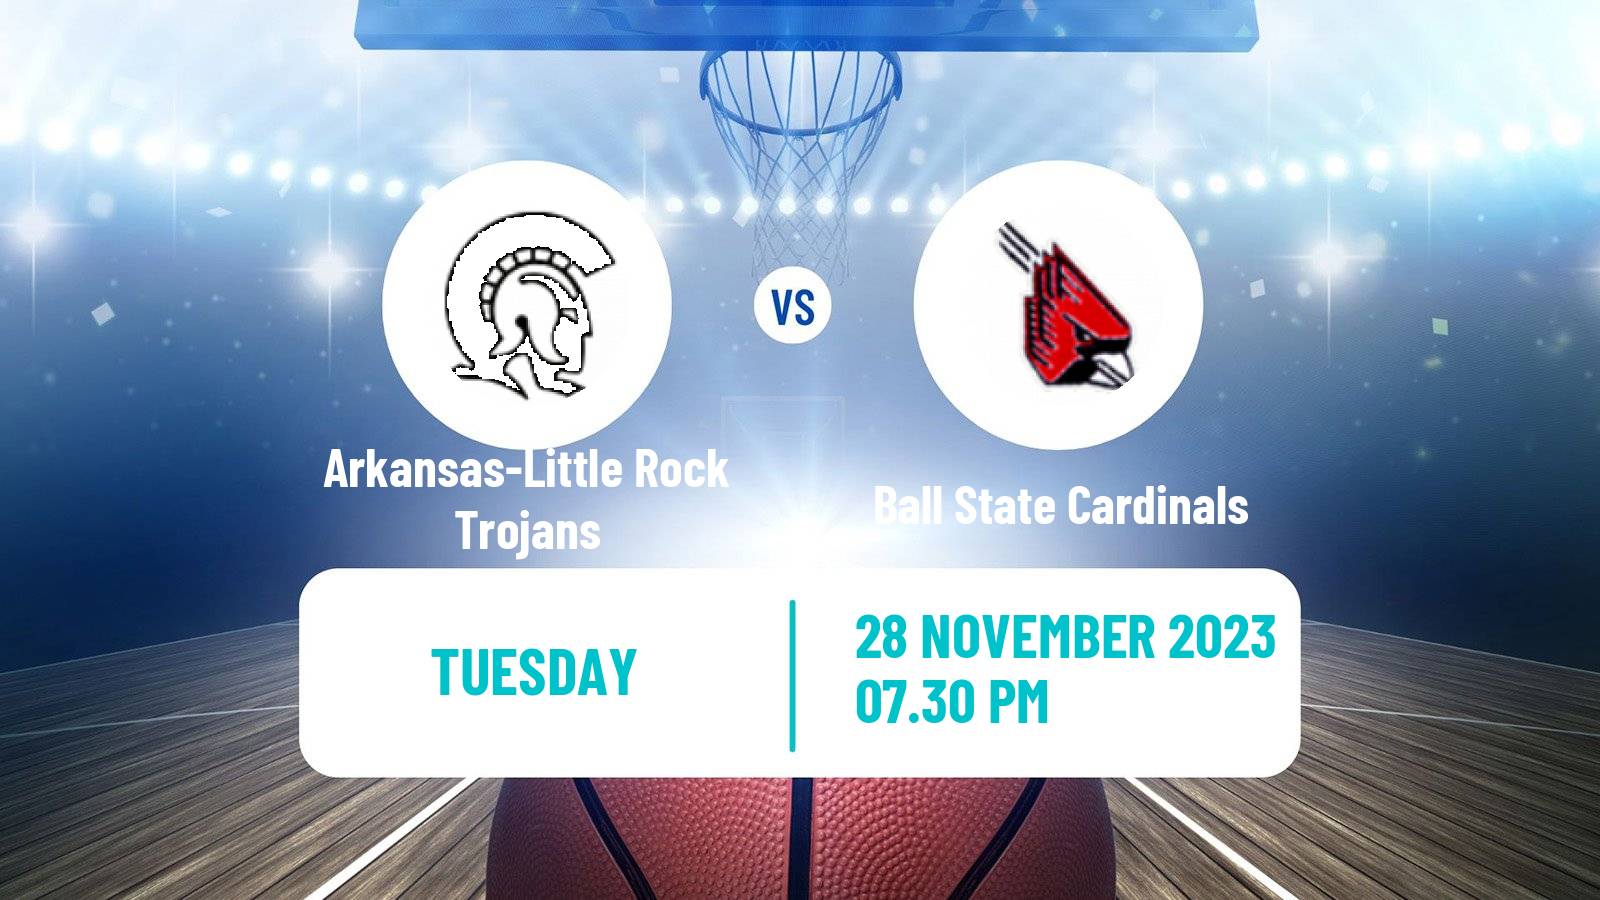 Basketball NCAA College Basketball Arkansas-Little Rock Trojans - Ball State Cardinals